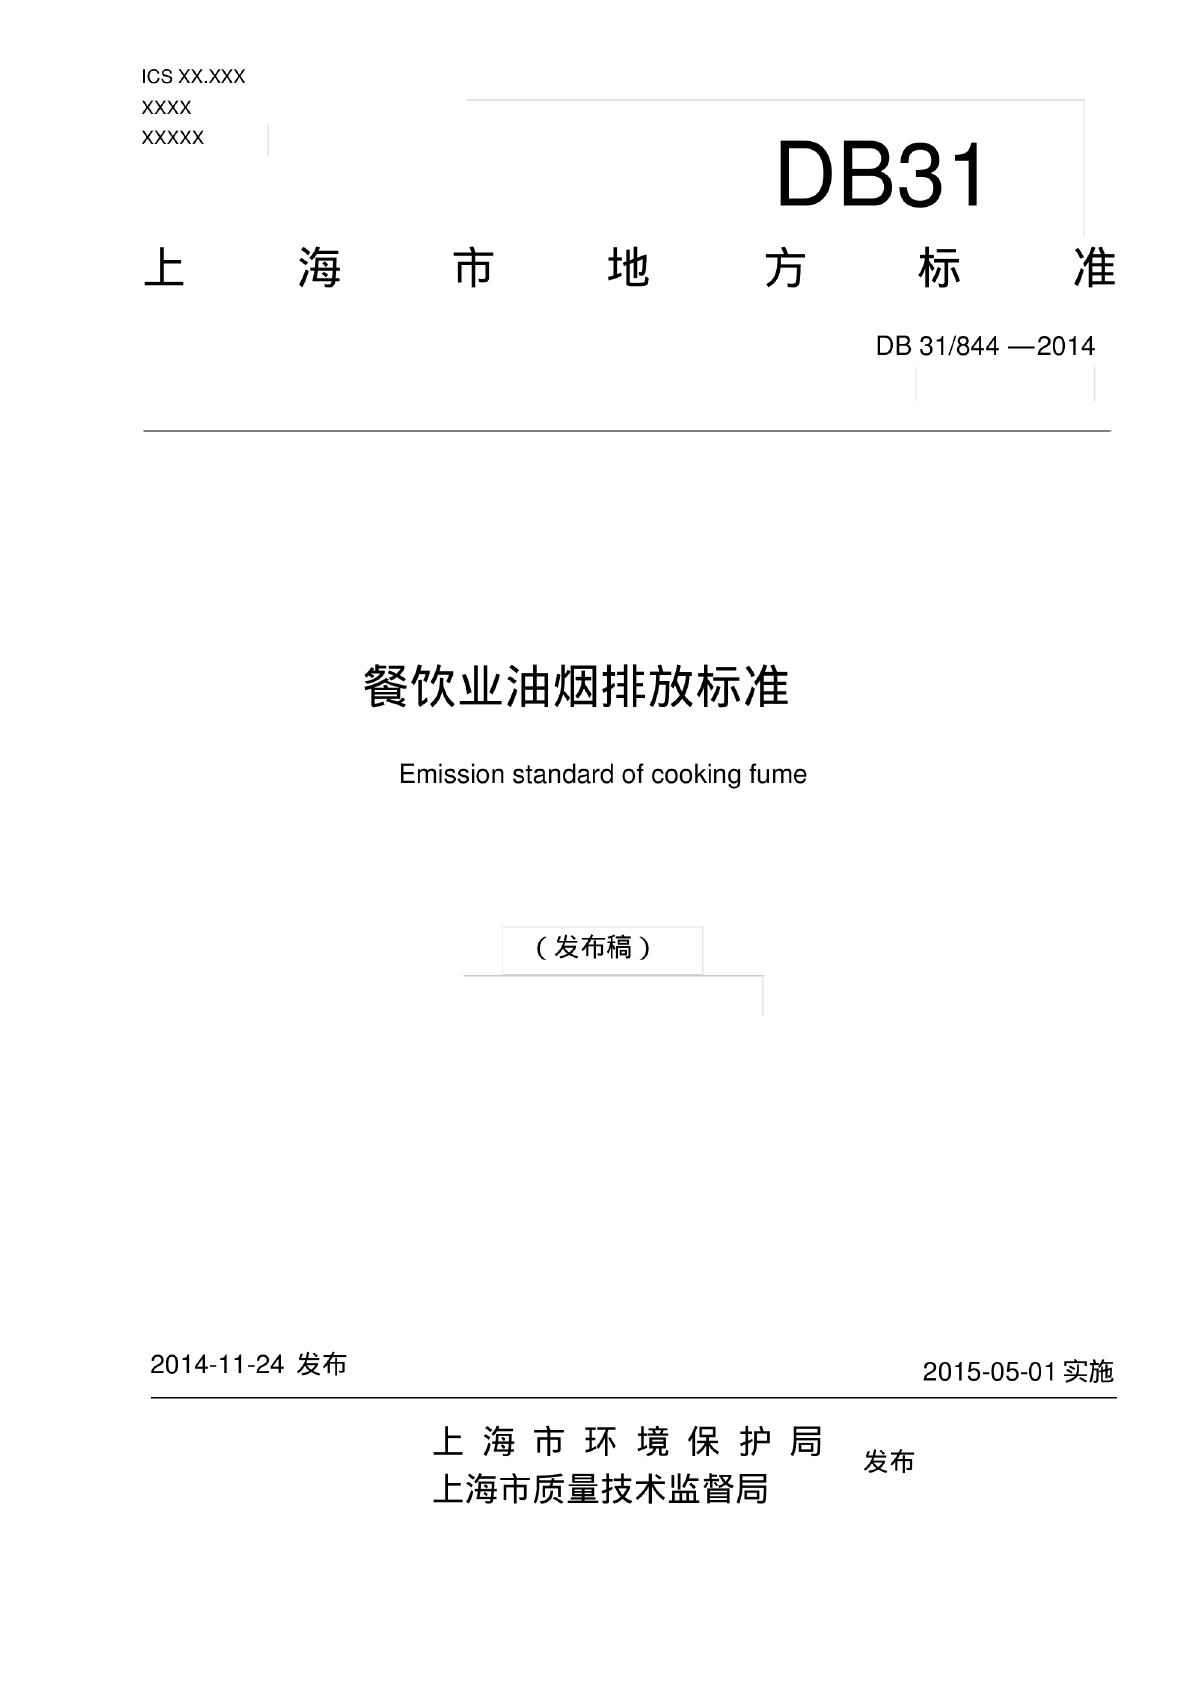 上海市餐饮业油烟排放标准2014